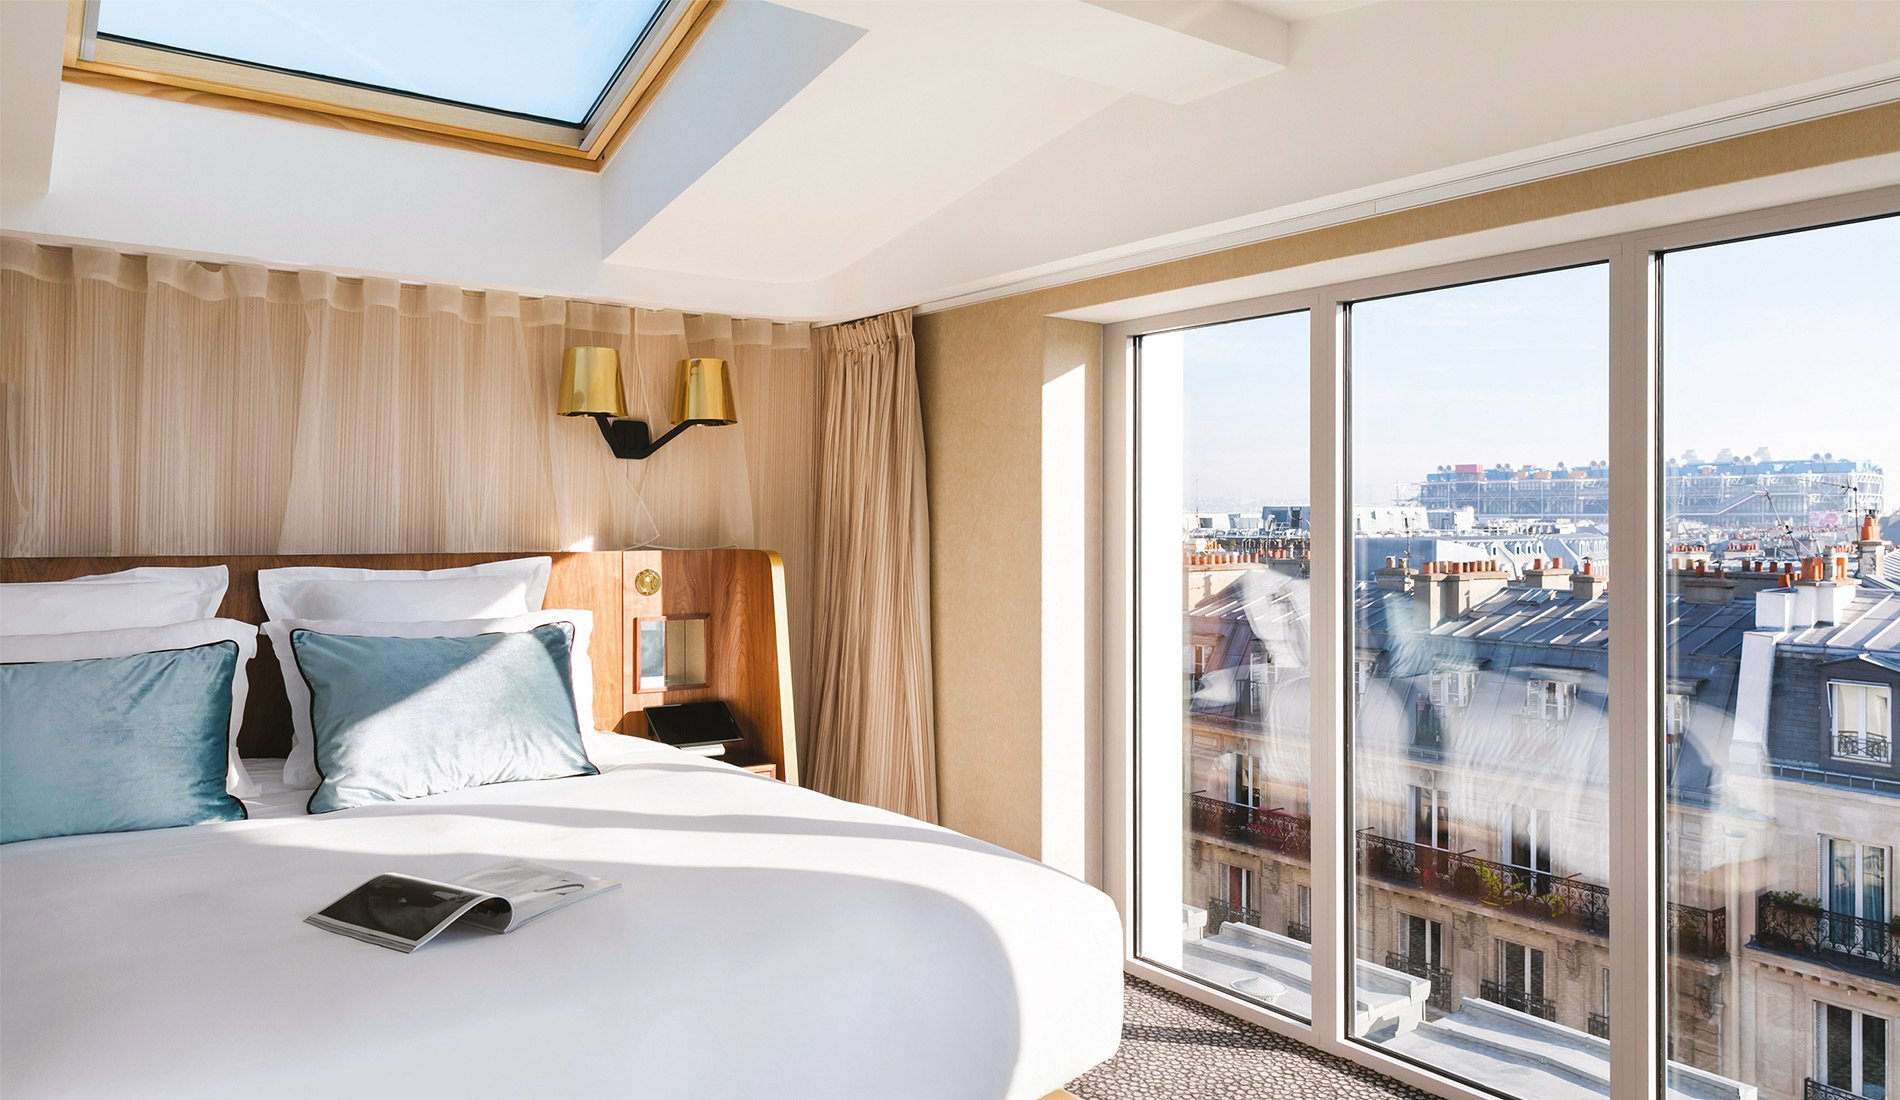 Hôtel de luxe - Maison Albar Hotels Le Pont-Neuf - 5 étoiles - chambre avec vue sur Paris